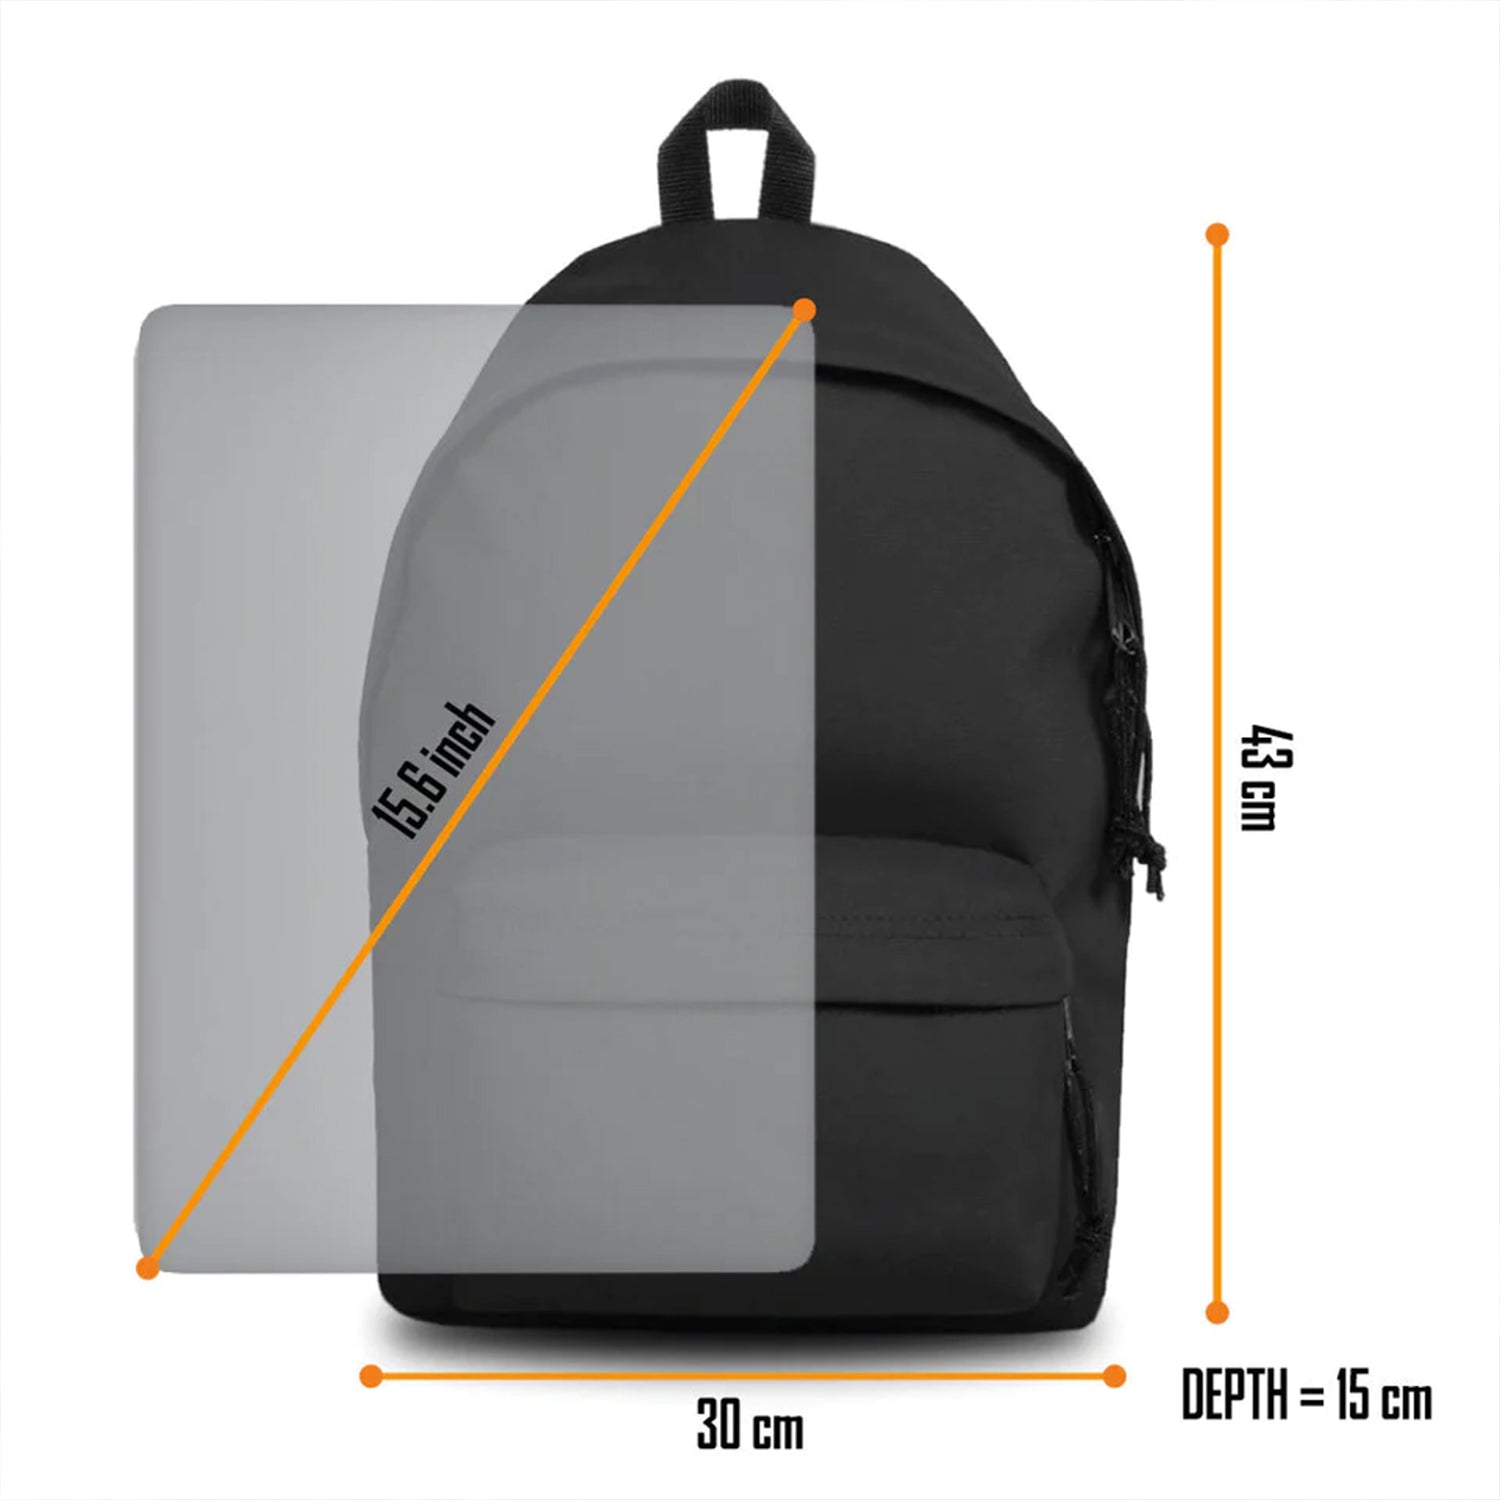 Rocksax Megadeth Peace Sells Daypack Laptop Pocket Adjustable Straps 17 x 13 in